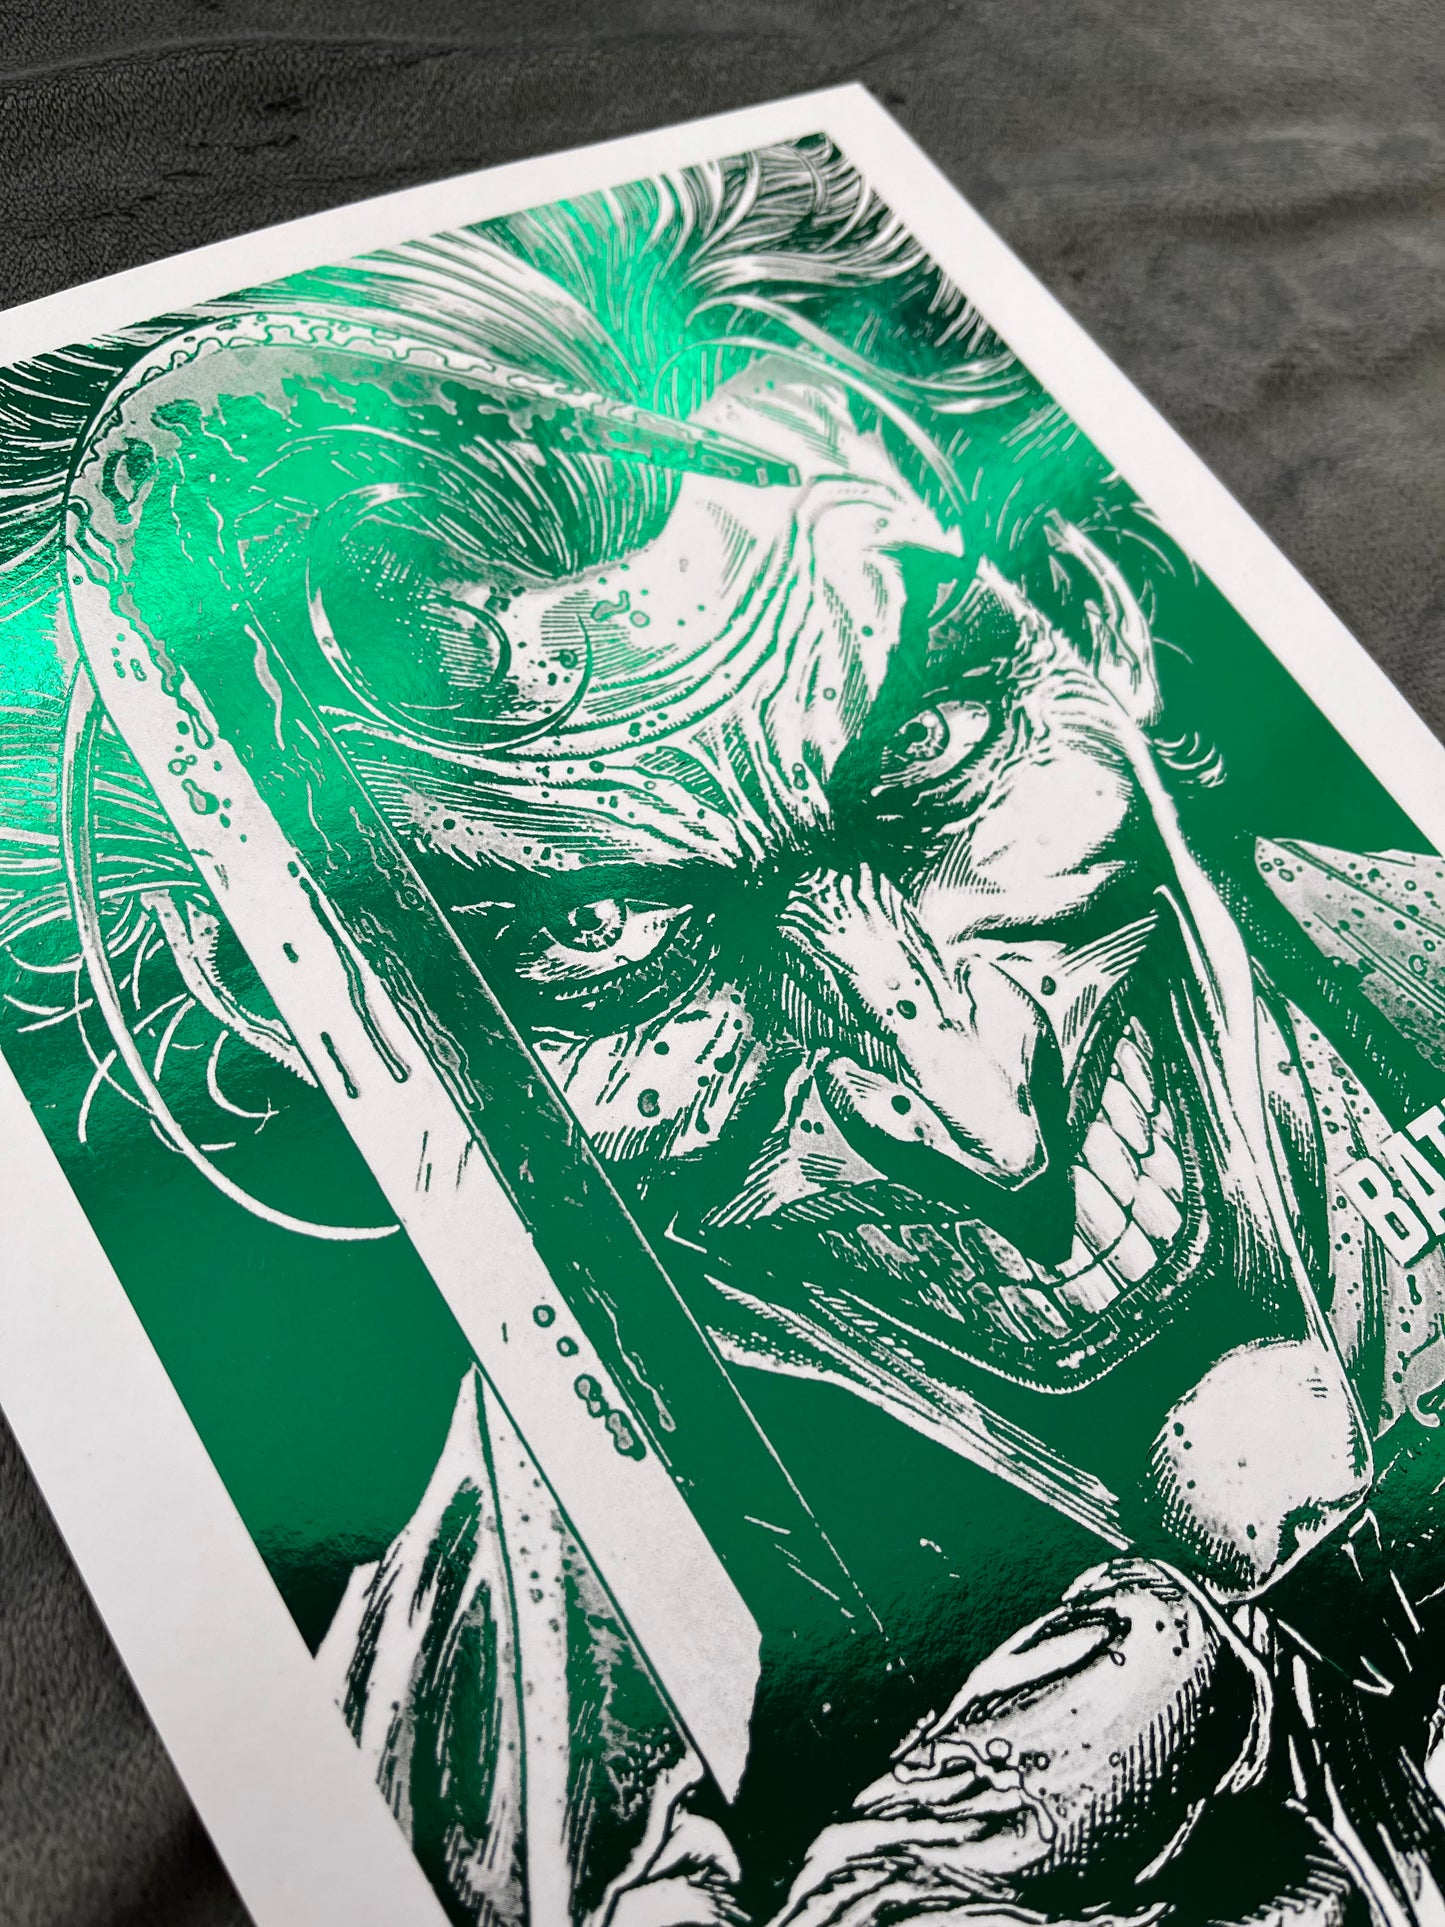 Joker Foil Print